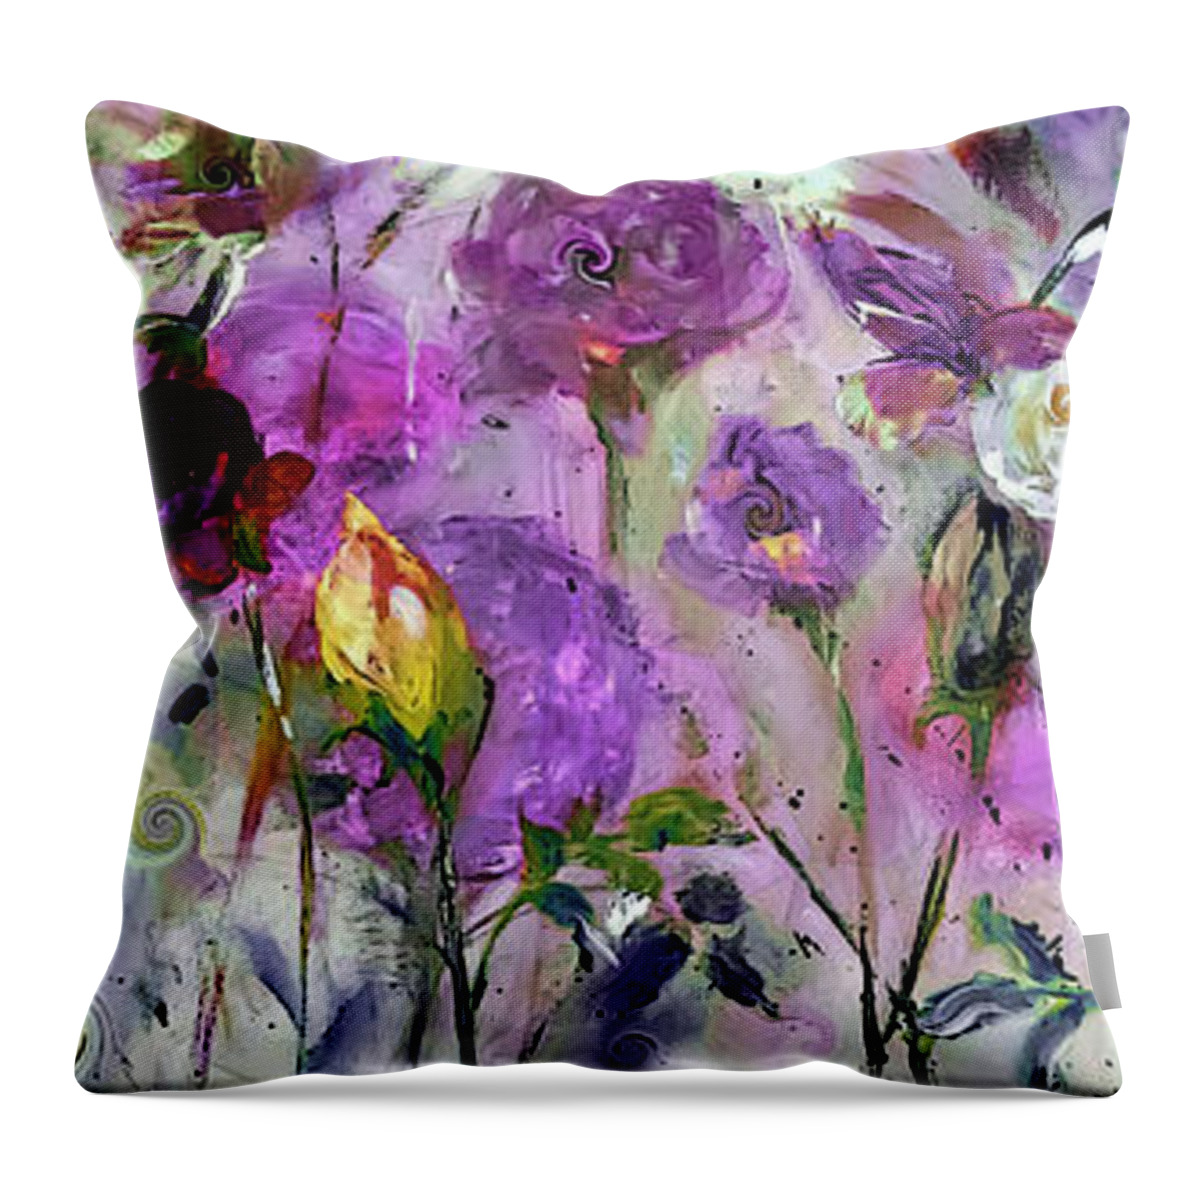 Rose Throw Pillow featuring the digital art Rose Garden Galore by Lisa Kaiser